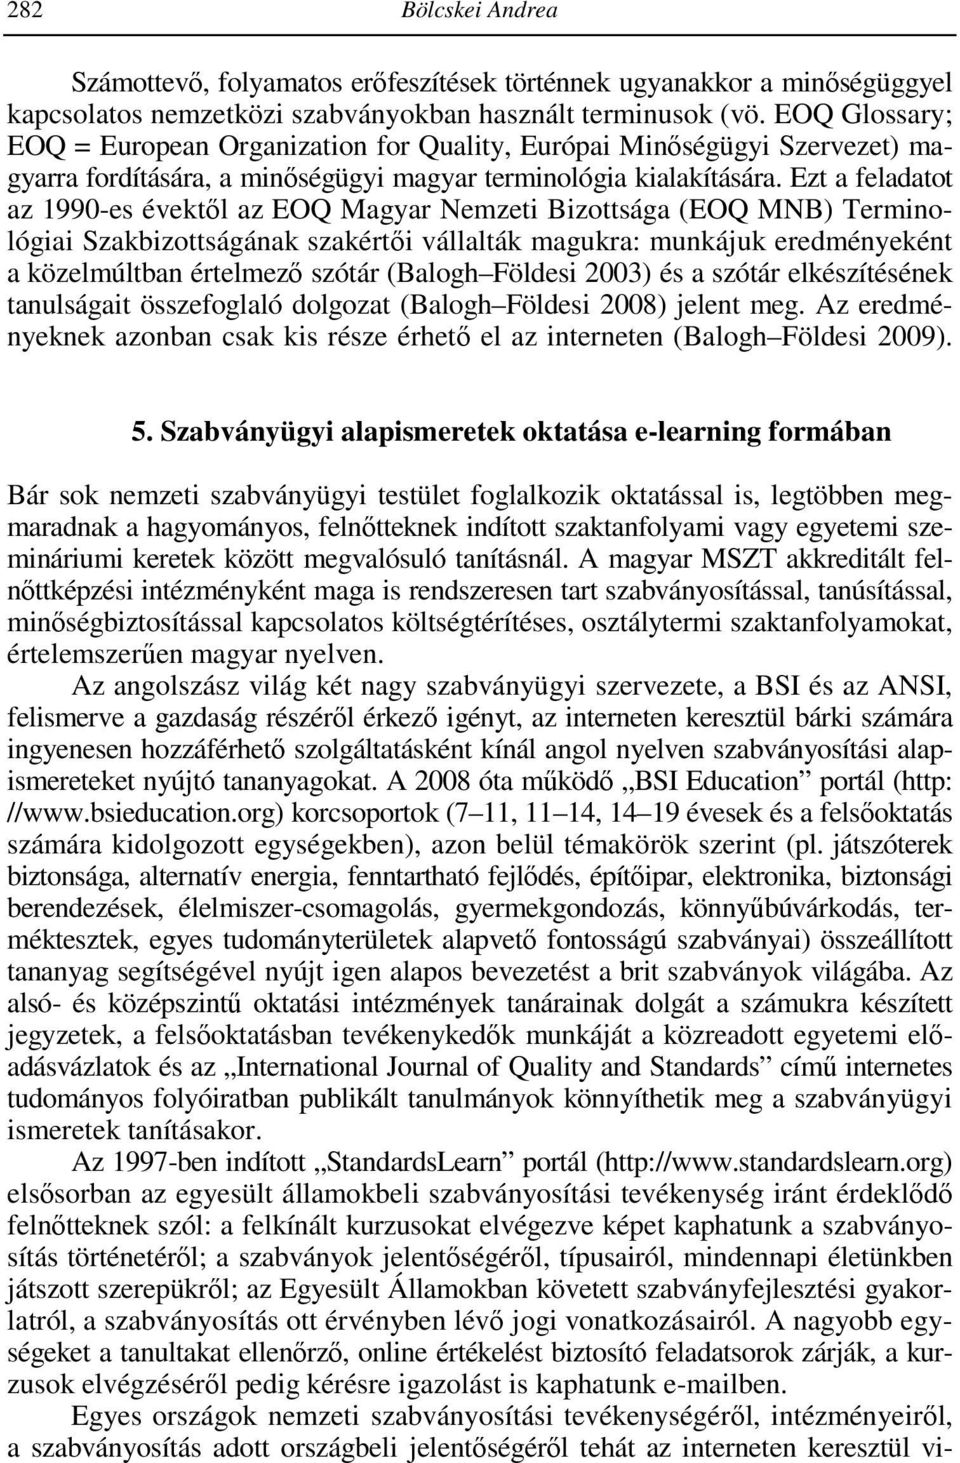 Ezt a feladatot az 1990-es évektől az EOQ Magyar Nemzeti Bizottsága (EOQ MNB) Terminológiai Szakbizottságának szakértői vállalták magukra: munkájuk eredményeként a közelmúltban értelmező szótár